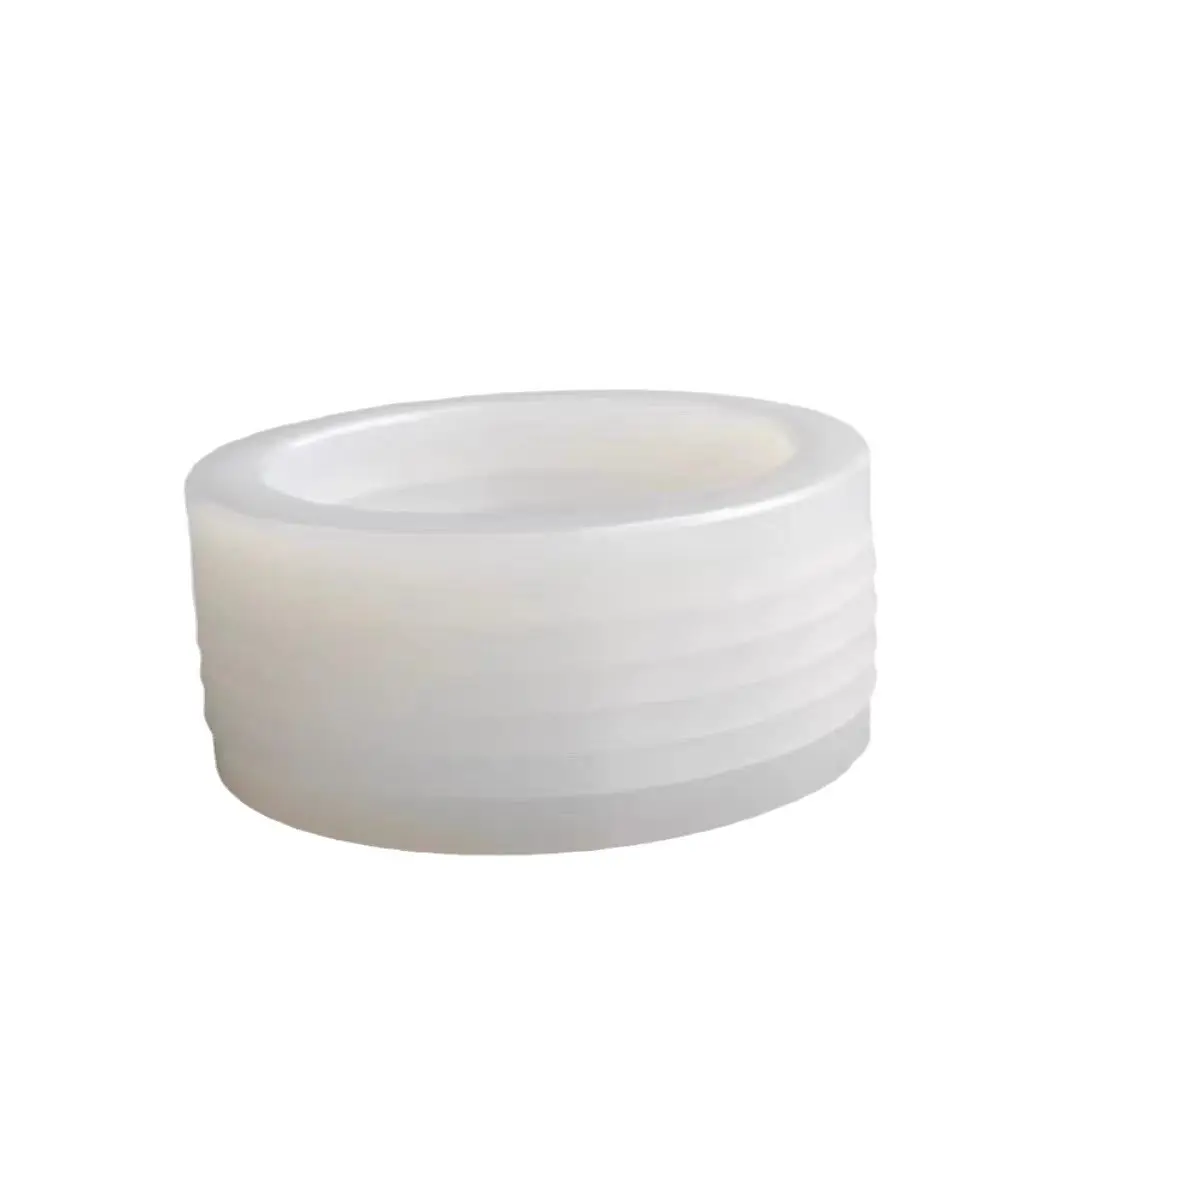 Комплект для упаковки K01 V, резиновое кольцо